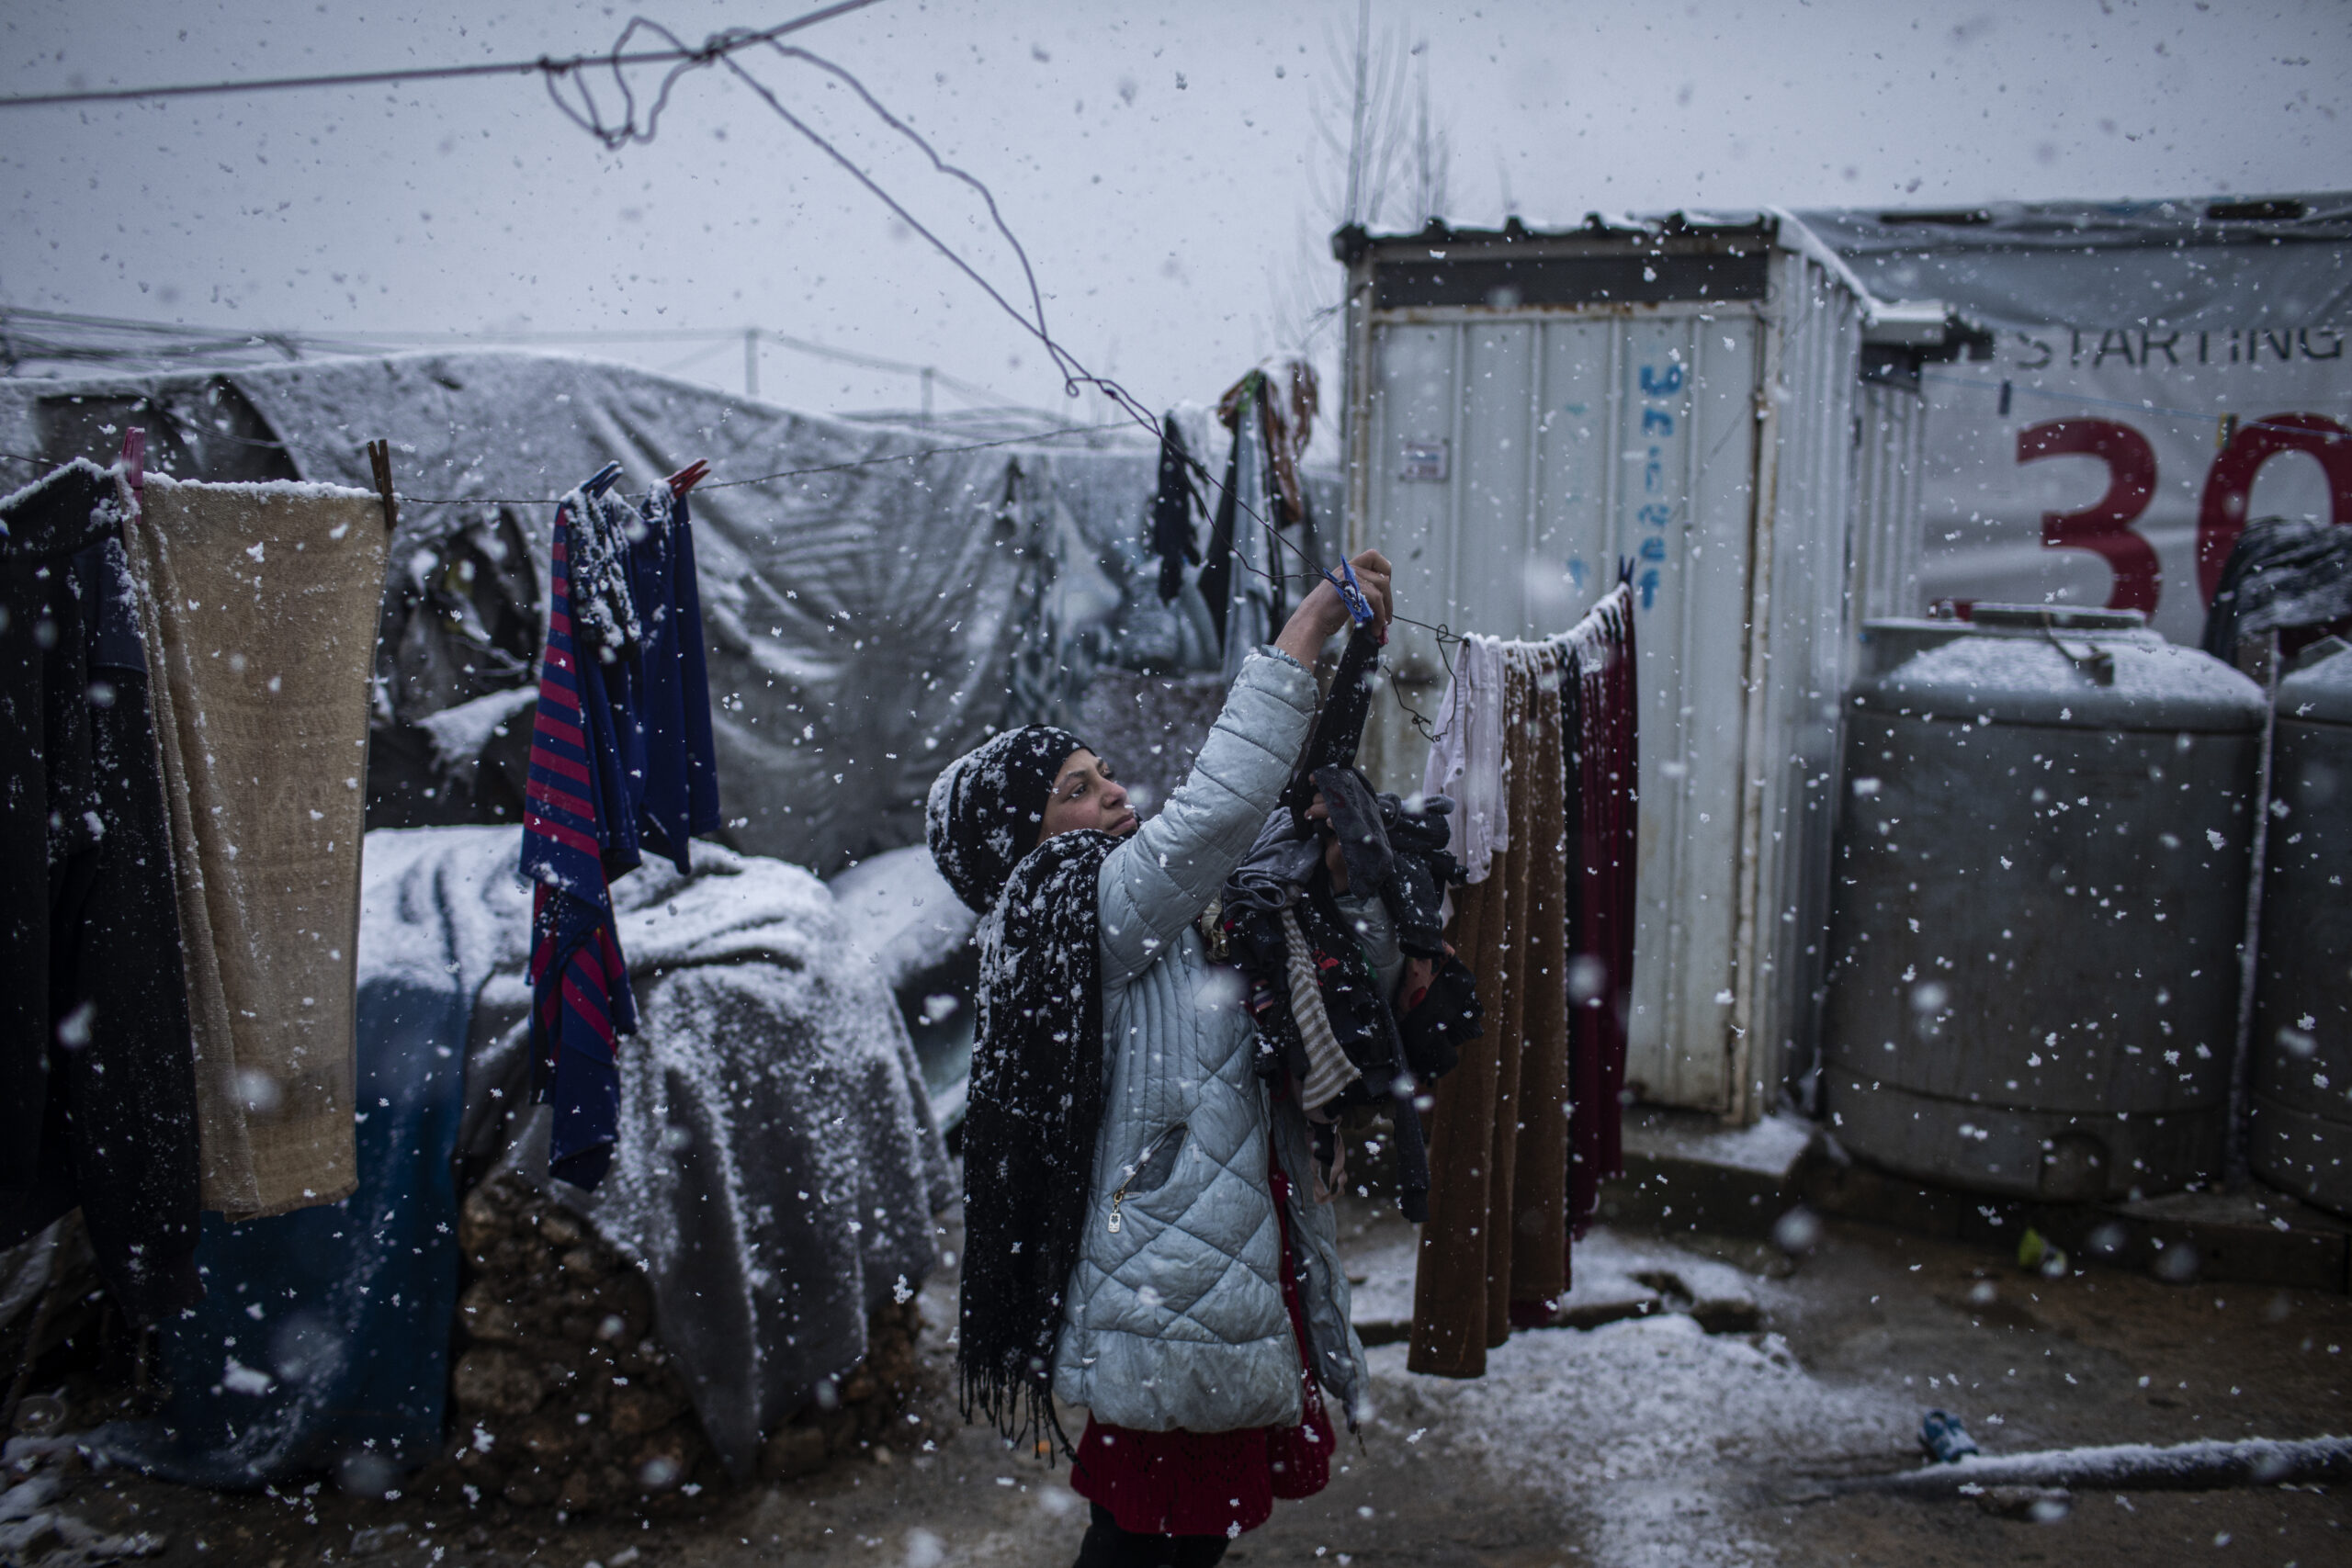 Siba Issa El Ali, une jeune réfugiée syrienne de 10 ans originaire de Deir ez-Zor, retire les vêtements des cordes à linge en plein dans la tempête de neige qui a frappé le camp de réfugiés informel où elle réside dans la vallée de Bekaa. ©UNHCR/Diego Ibarra Sánchez